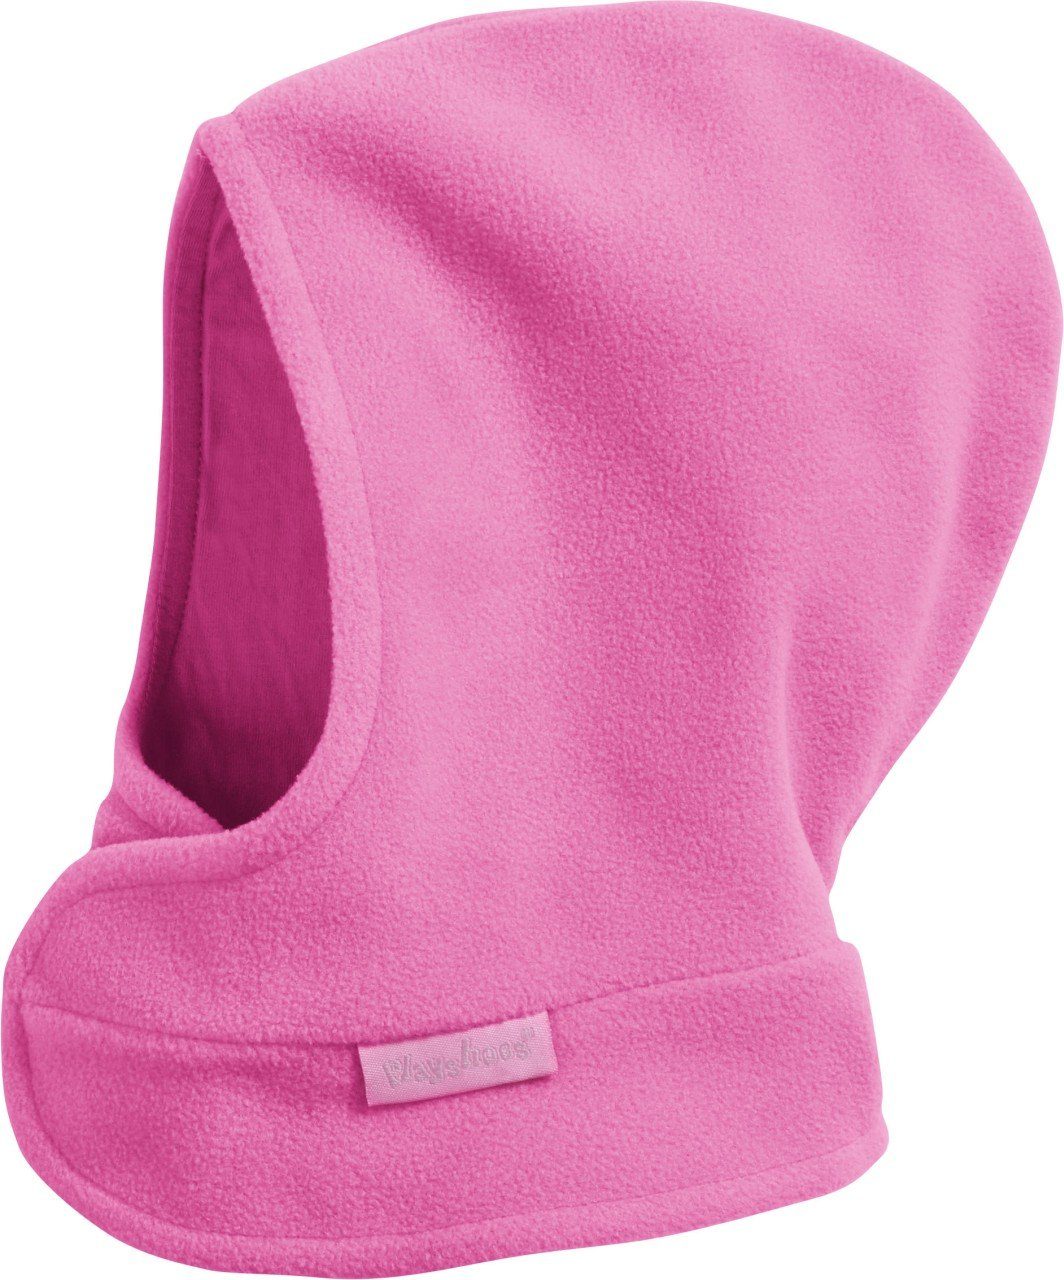 Playshoes Schlupfmütze Fleece-Schalmütze mit Klettverschluß pink